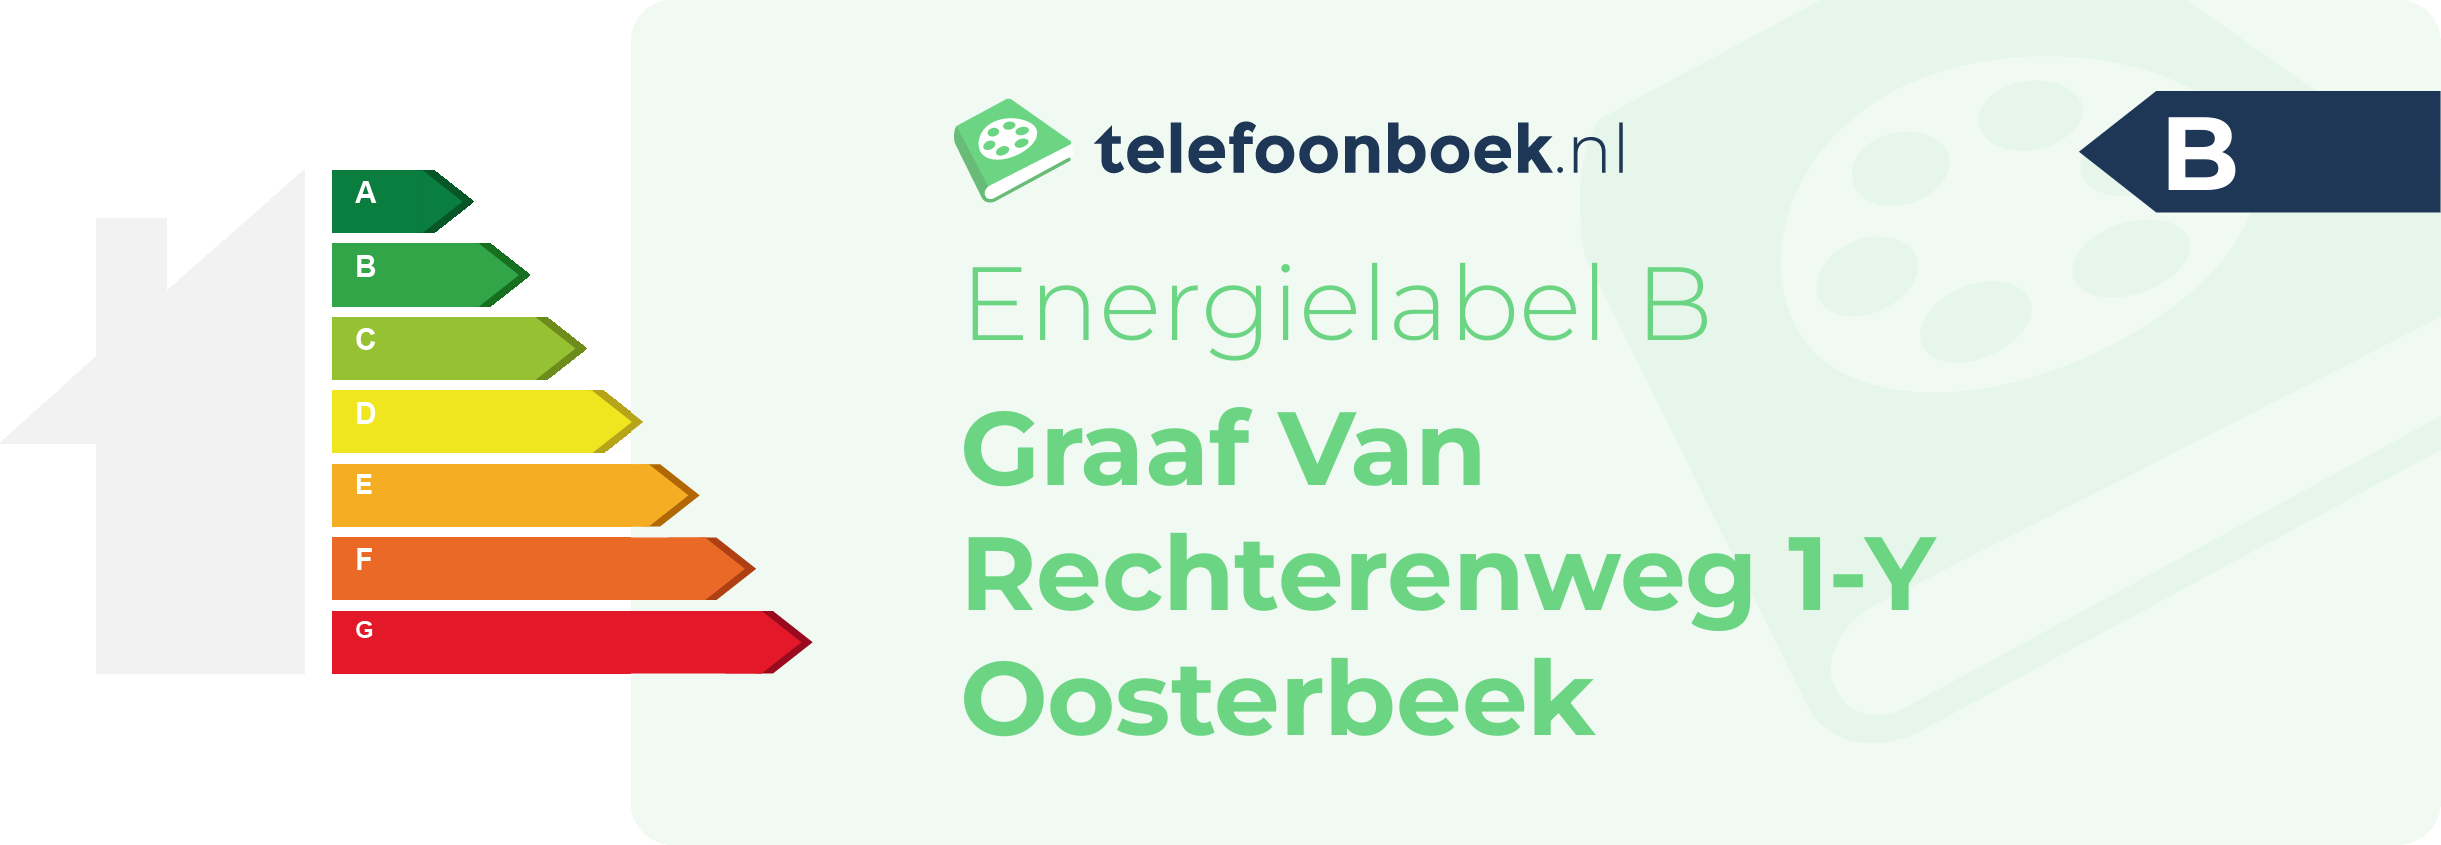 Energielabel Graaf Van Rechterenweg 1-Y Oosterbeek